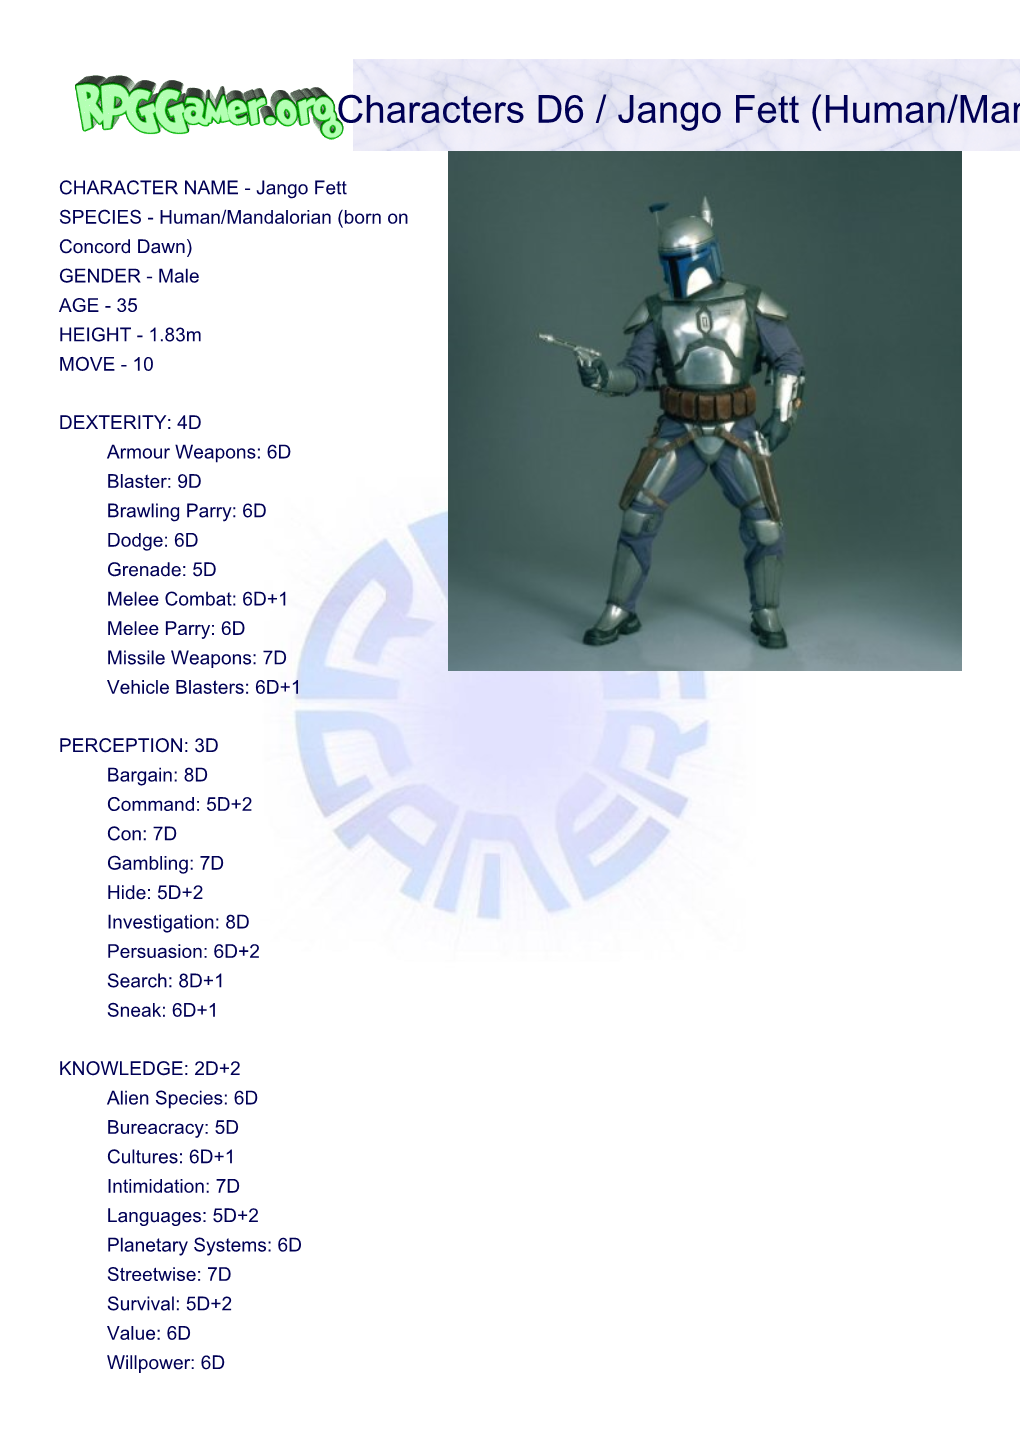 Characters D6 / Jango Fett (Human/Mandalorian Bounty Hunter)